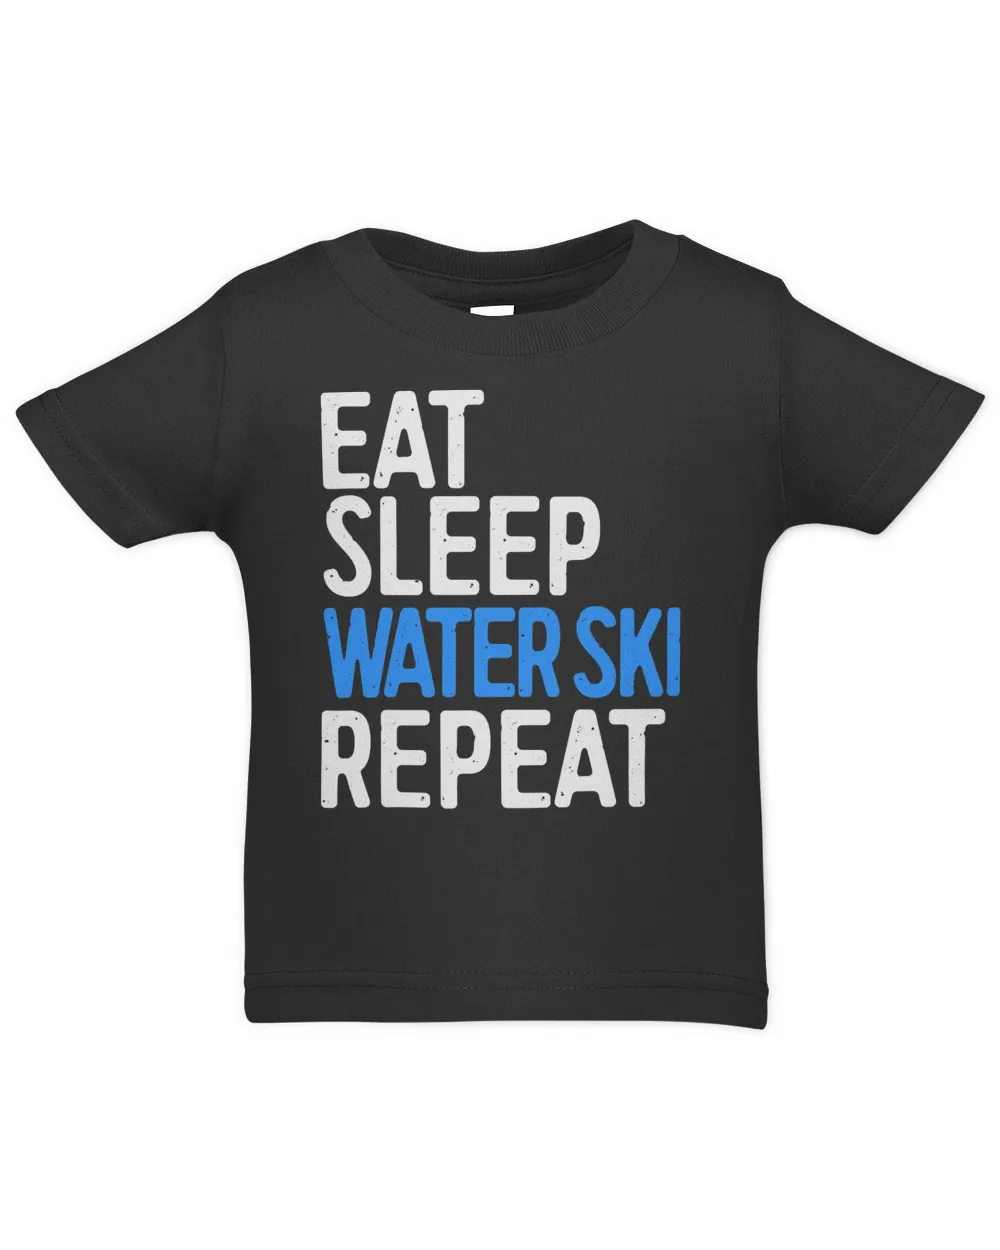 Eat Sleep Water Ski Repeat T-Shirt Water Skiing Gift